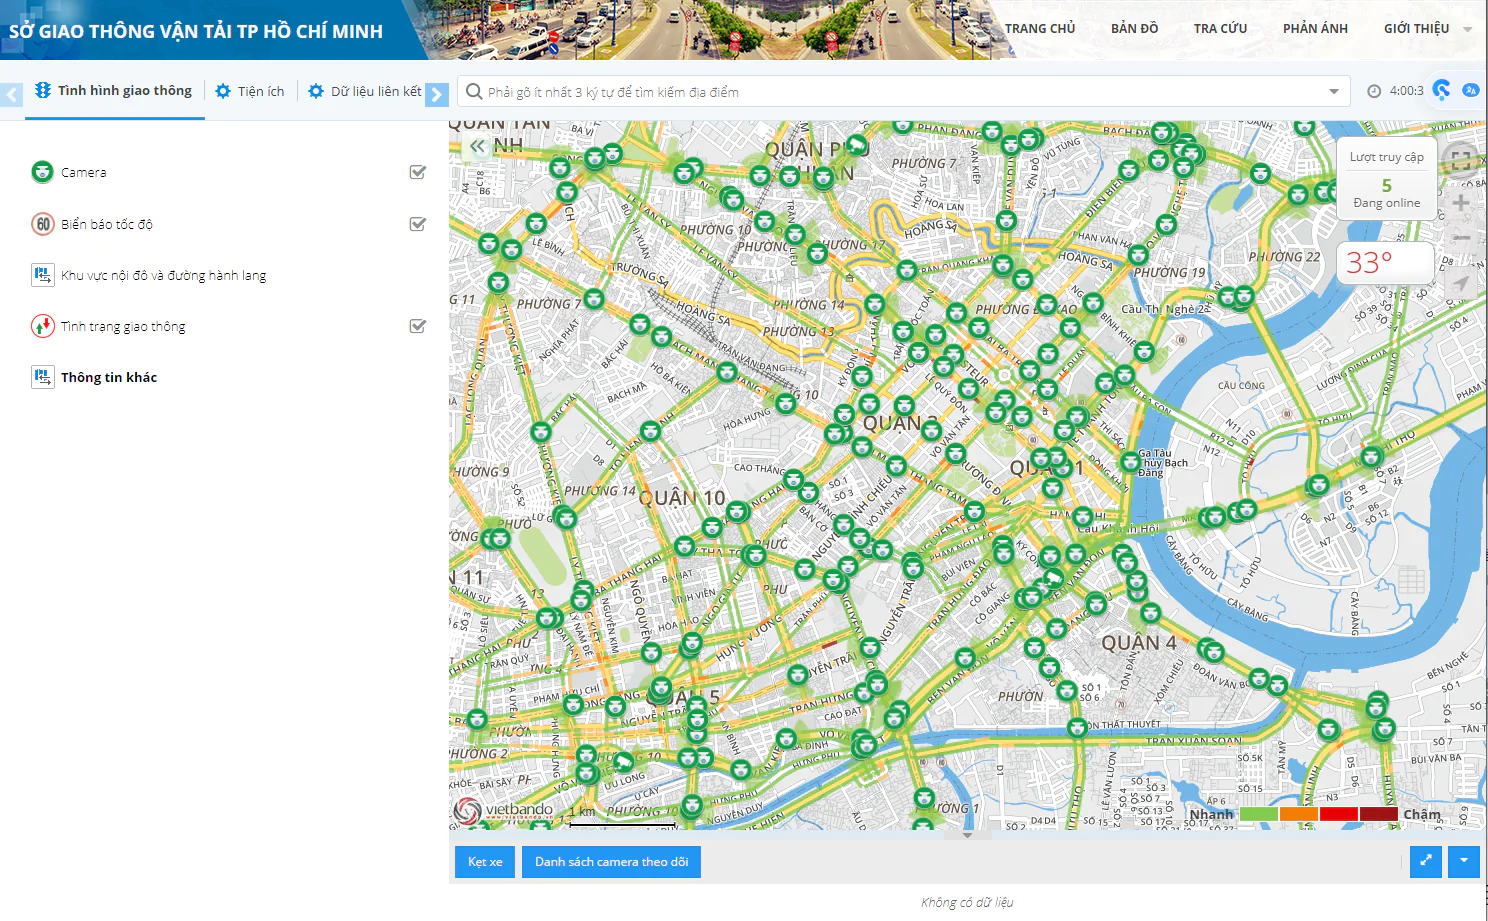 Bản đồ số giao thông thành phố Hồ Chí Minh